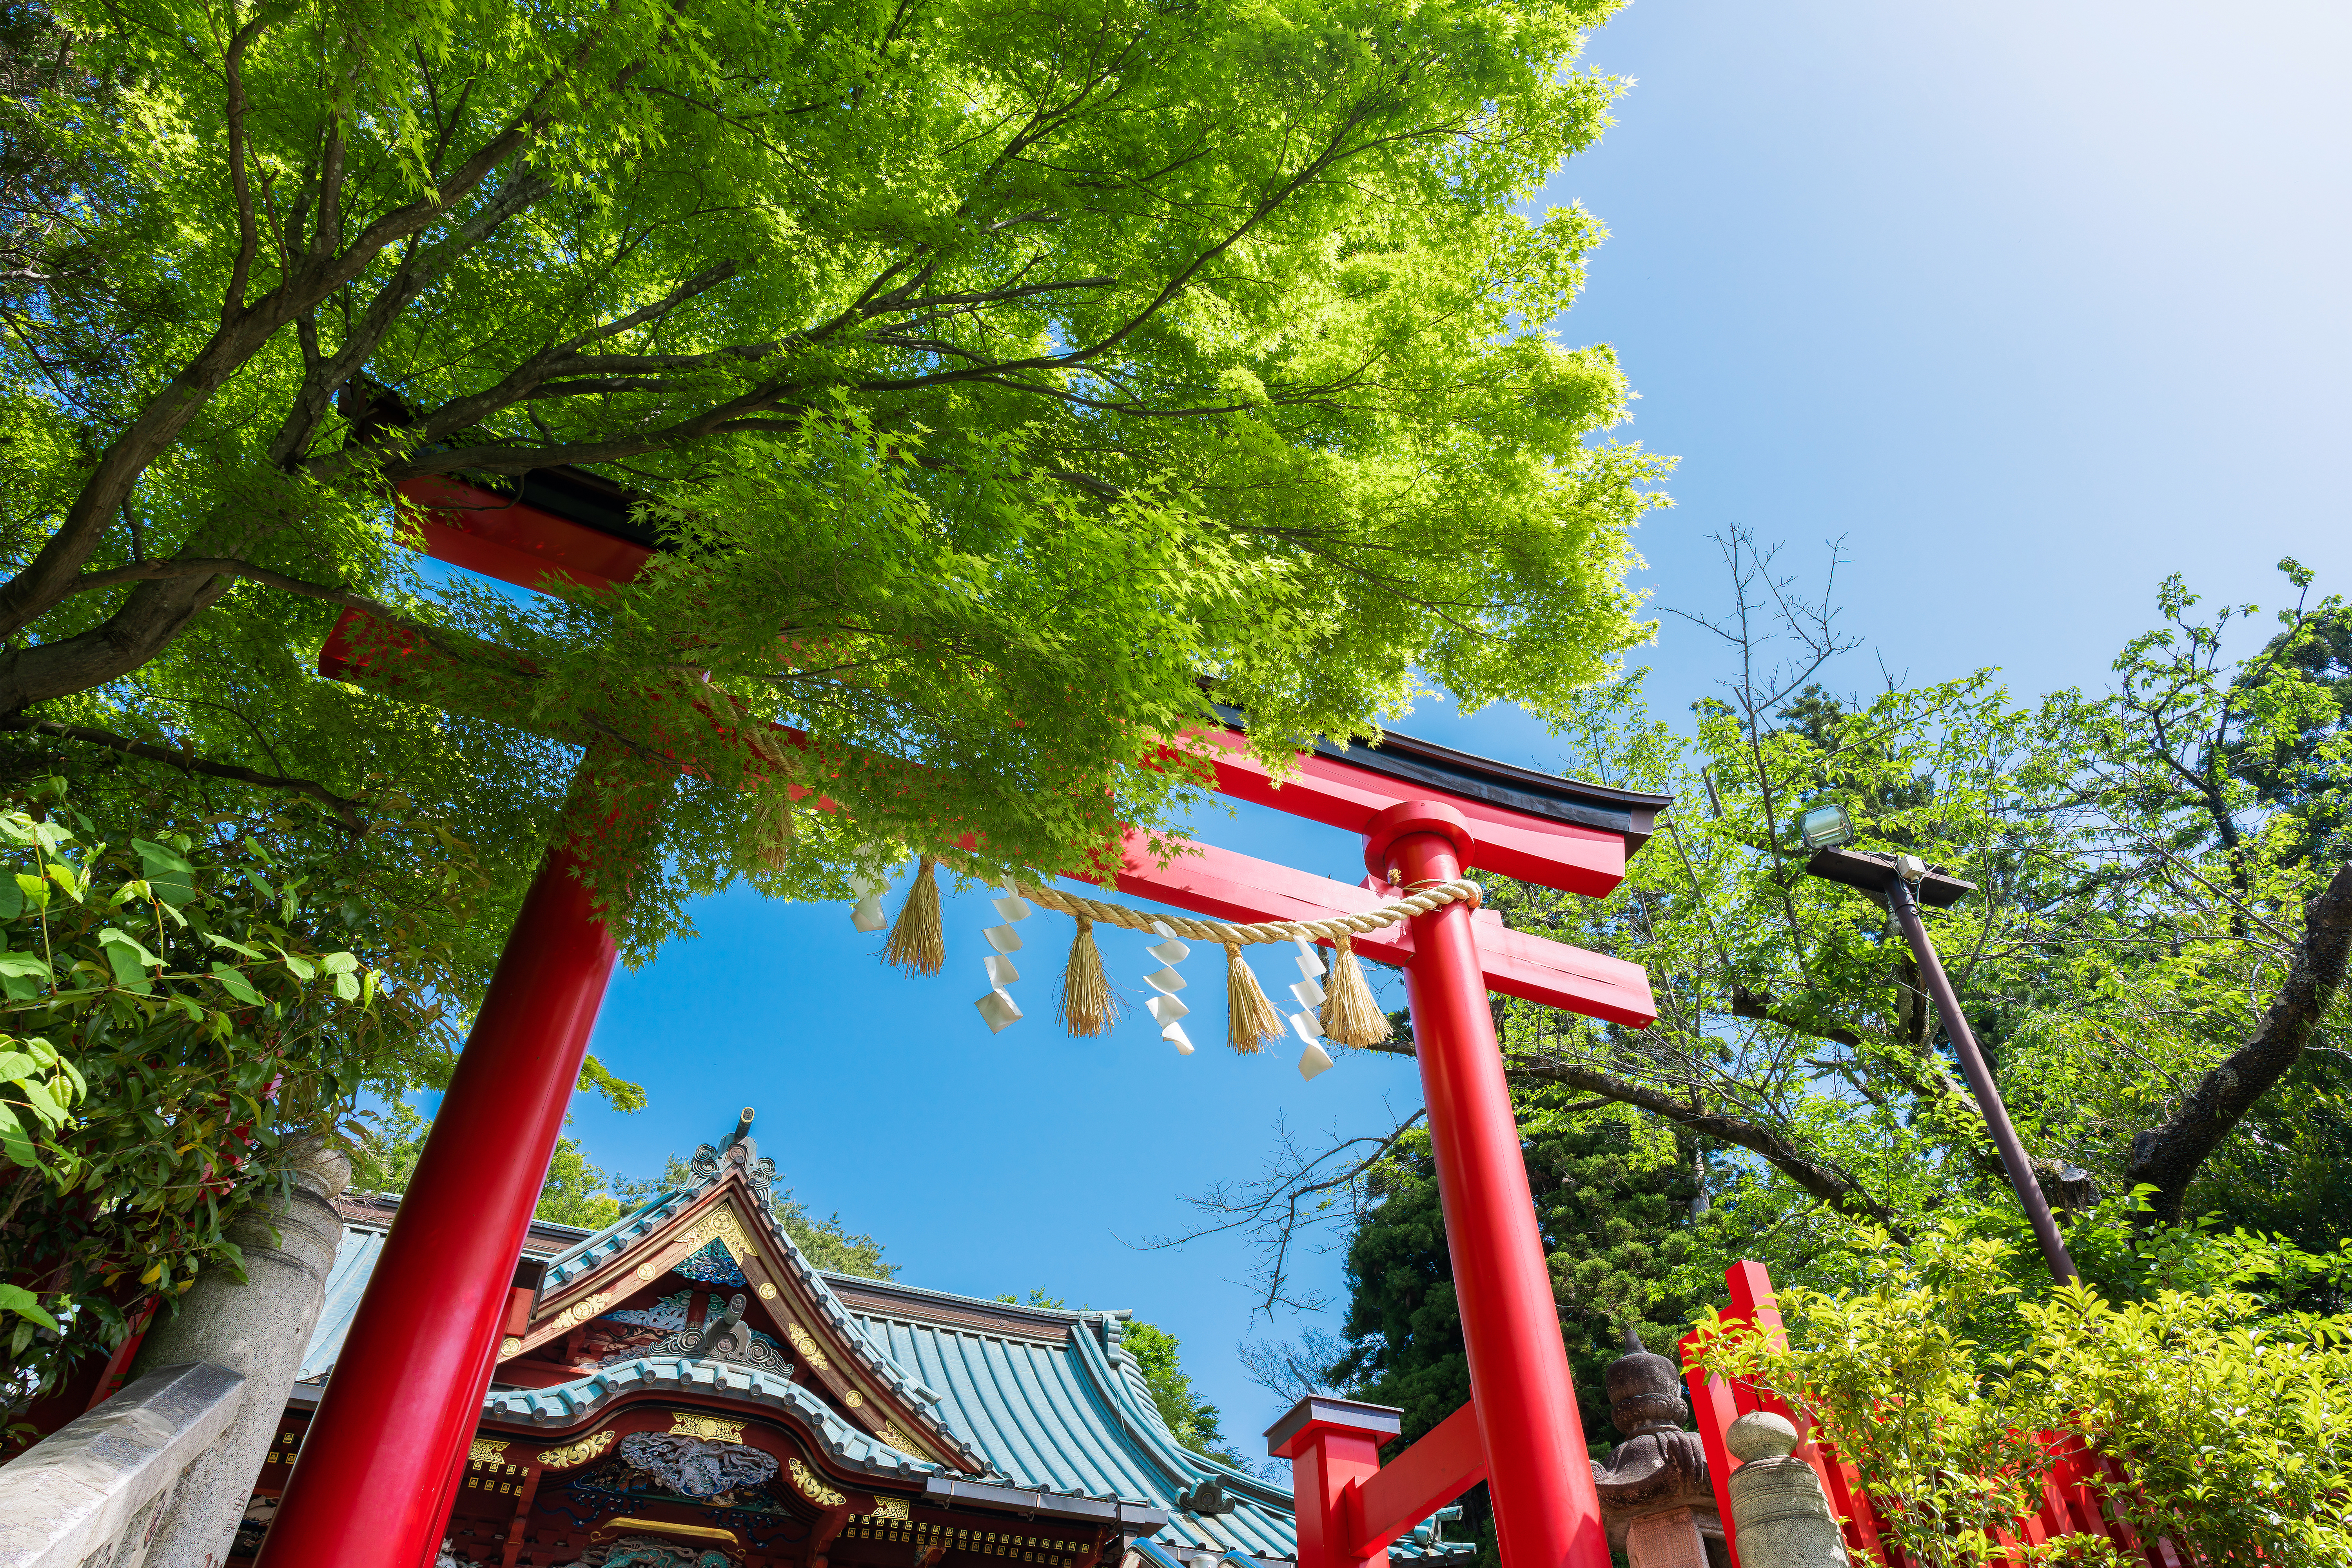 武蔵御嶽神社と高尾山薬王院バスツアーのおすすめポイント詳細